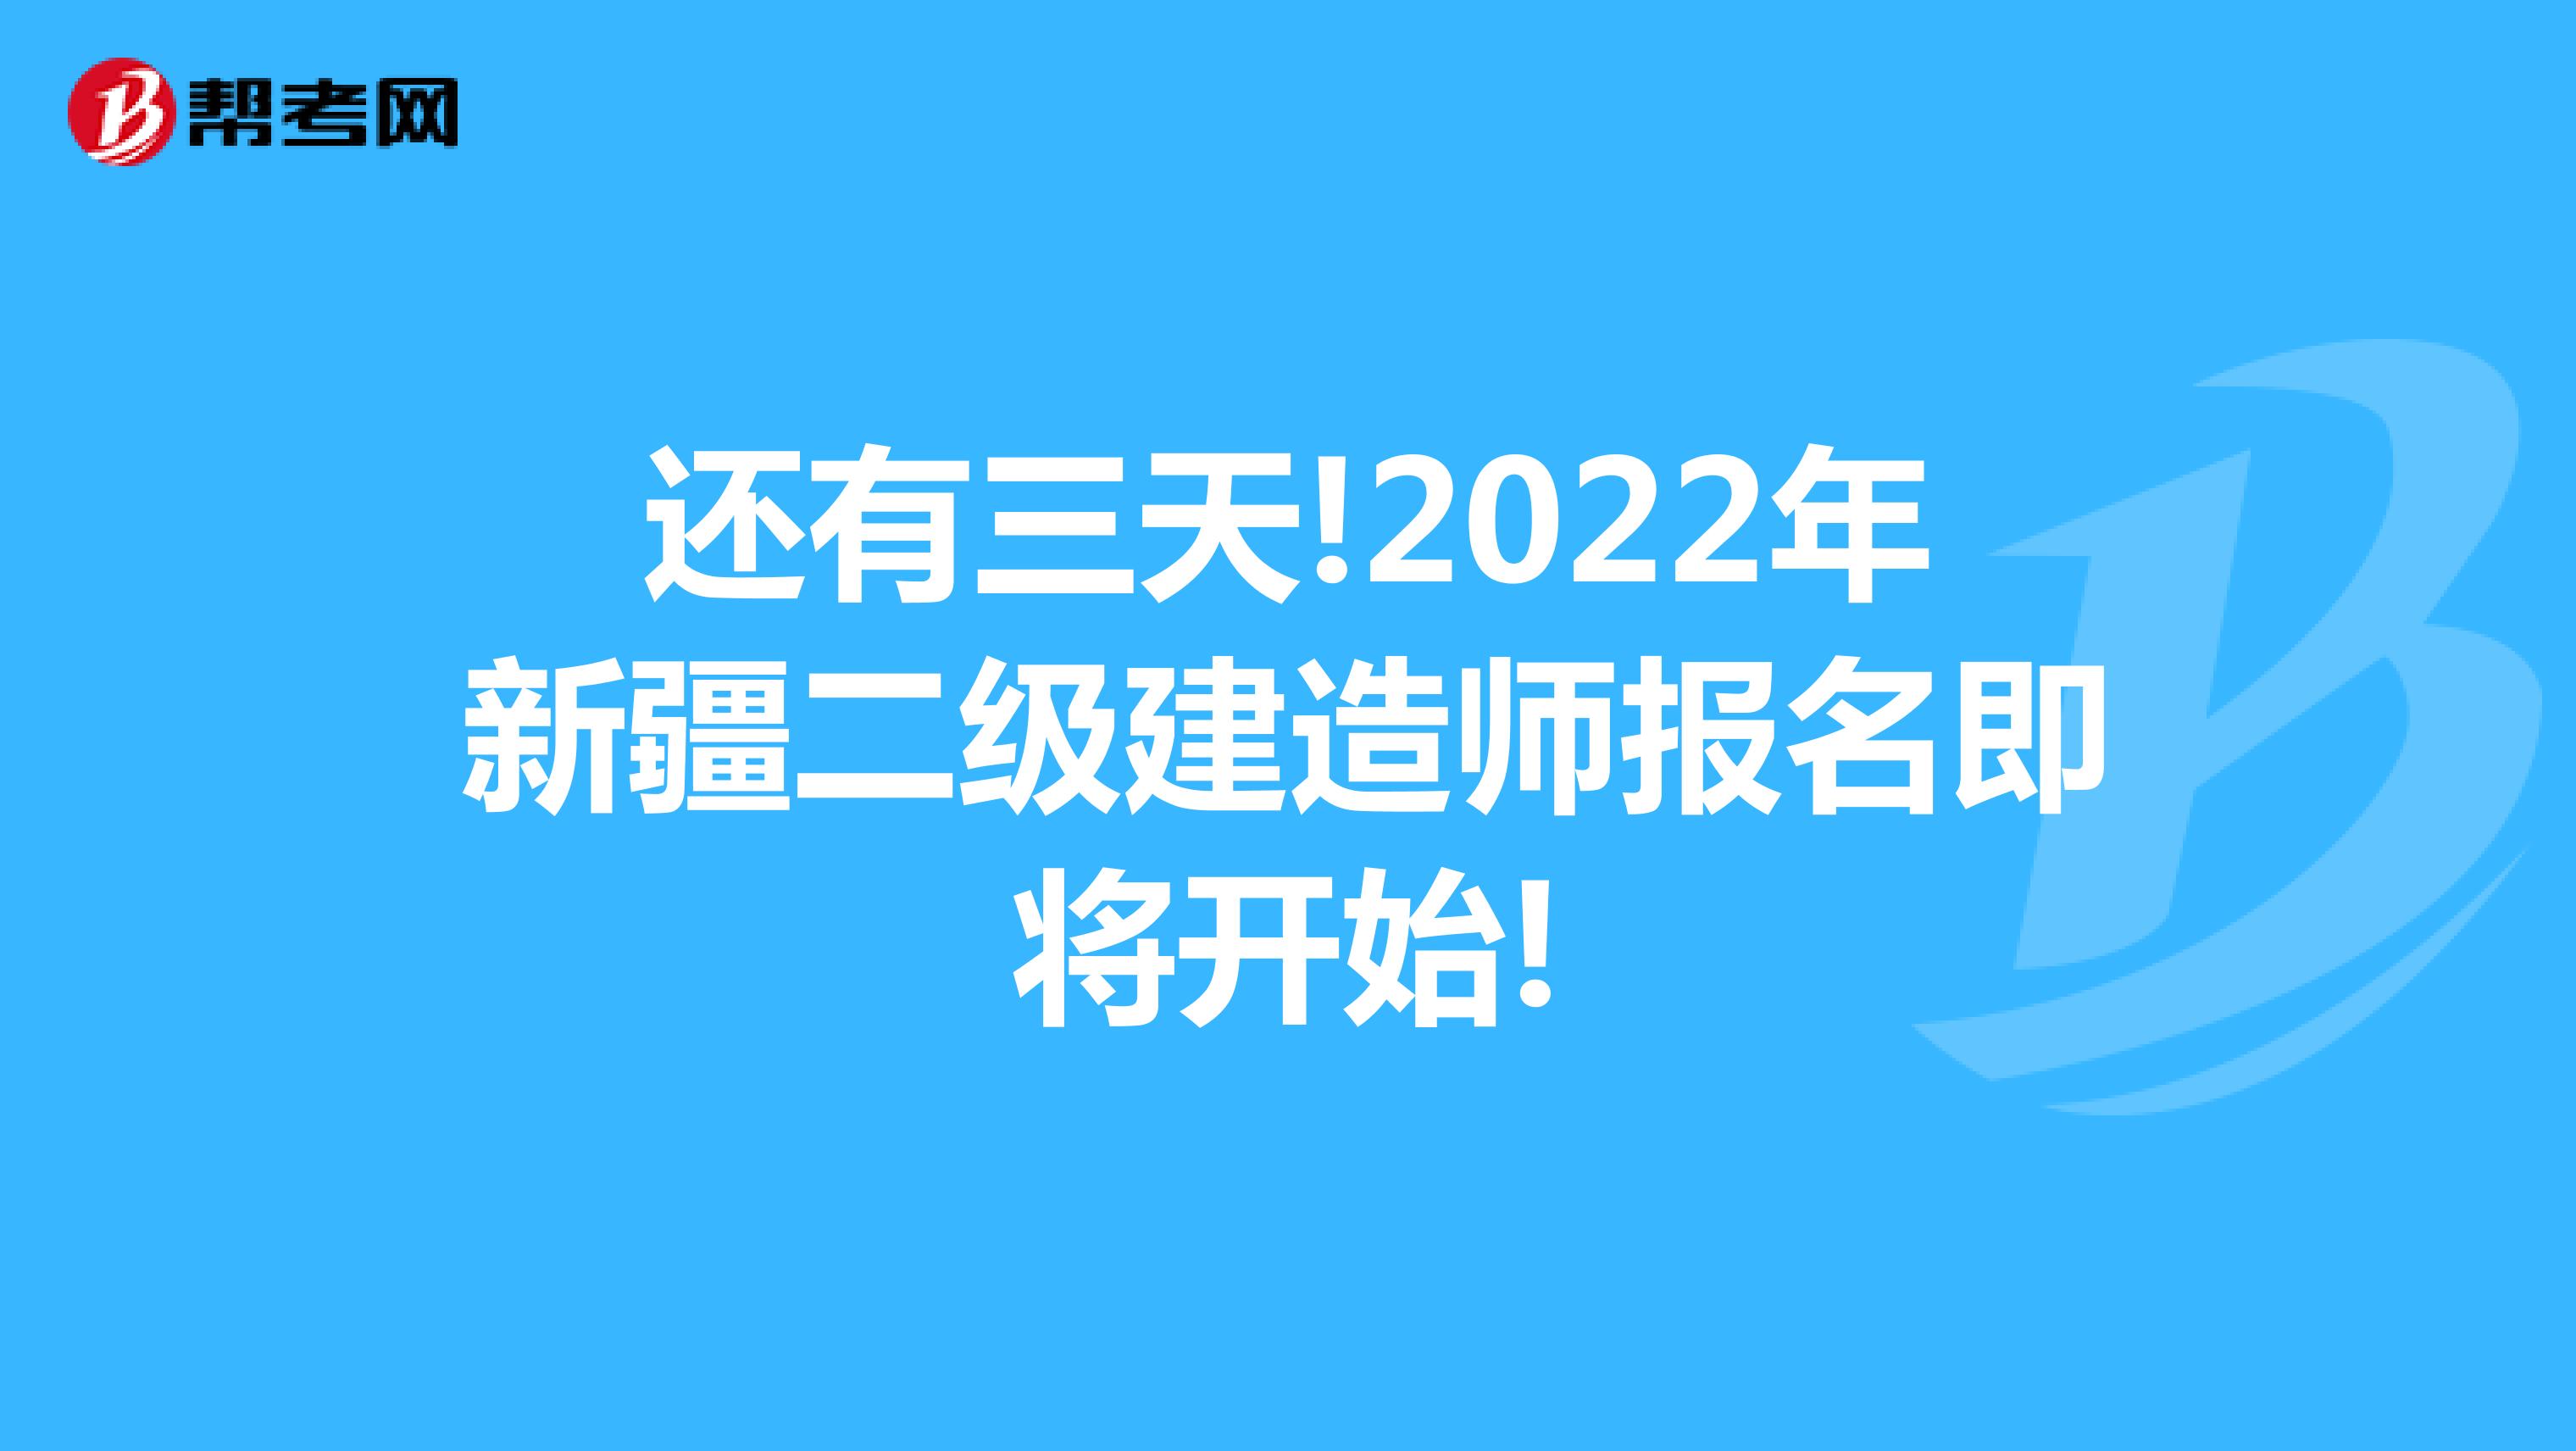 还有三天!2022年新疆二级建造师报名即将开始!